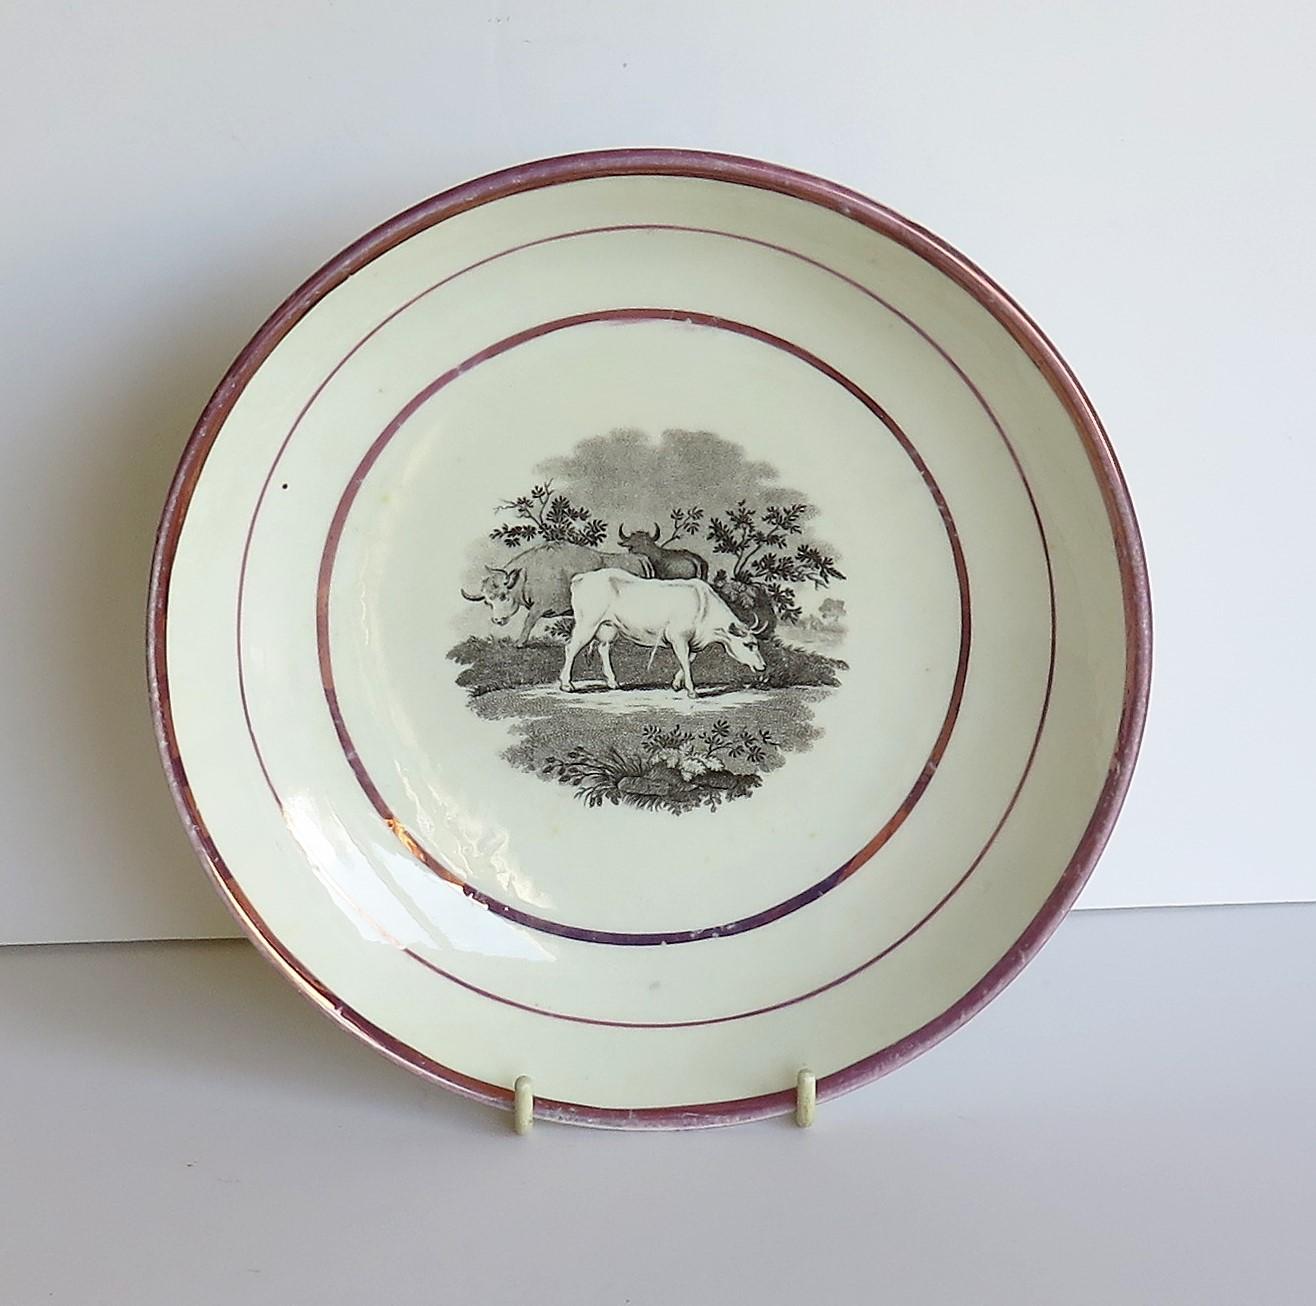 Dies ist ein gutes Porzellan Sunderland rosa Lüster Gericht oder tiefe Platte aus dem frühen 19. Jahrhundert, George III Zeitraum, ca. 1810-1820.

Die Schale ist mit einem Fledermausmotiv verziert, das drei grasende Rinder oder Kühe in einer